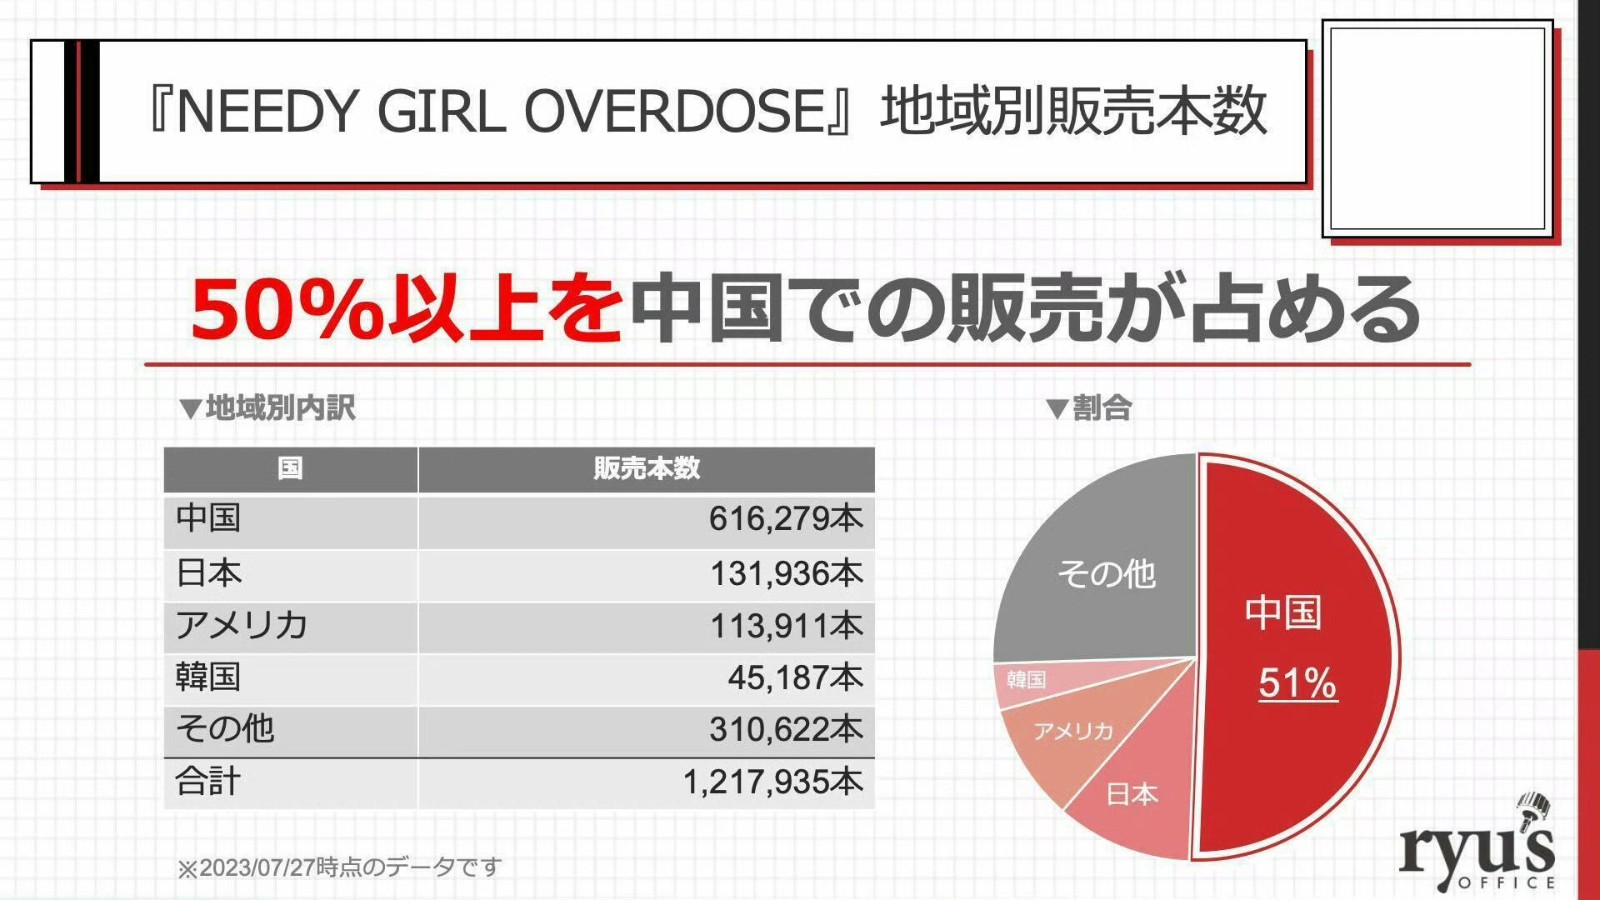 《主播女孩重度依赖》销量达120万 过半销量来自中国